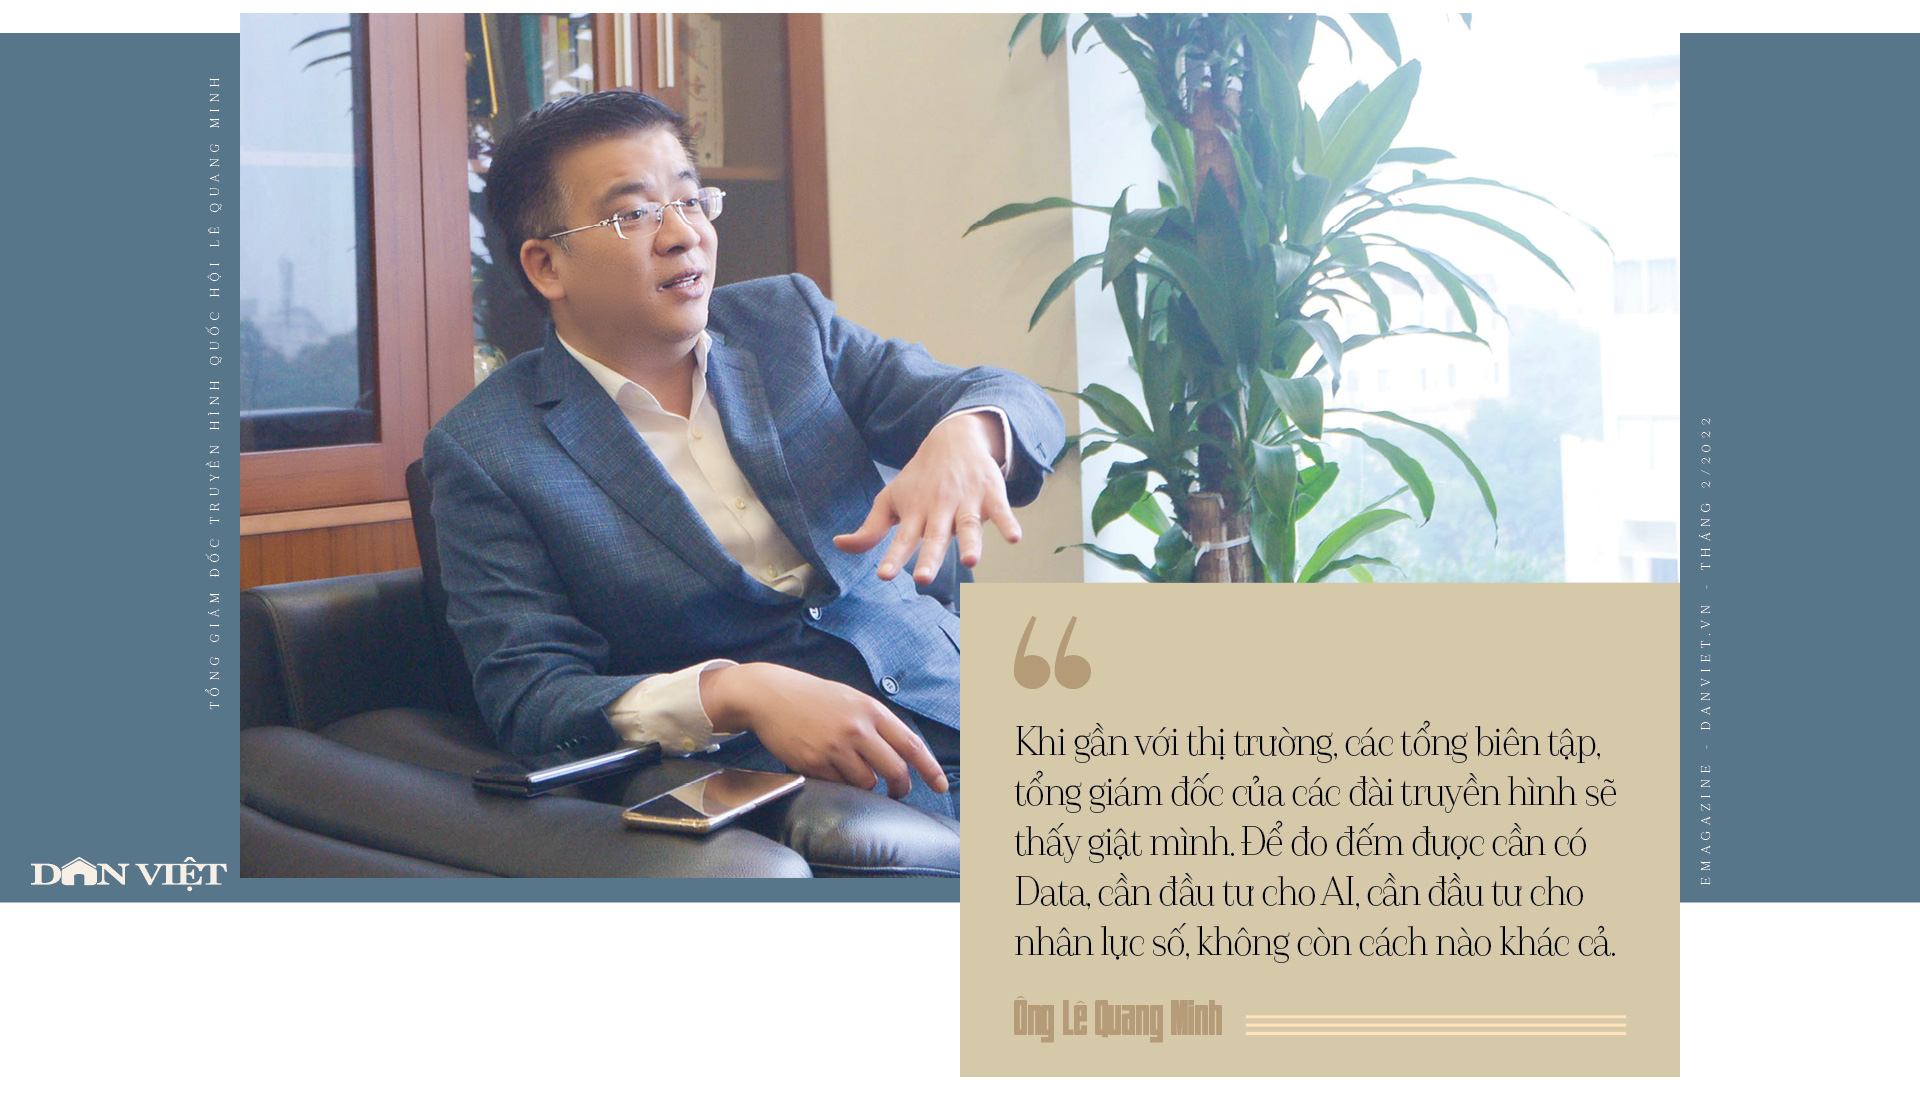 Tổng giám đốc kênh Truyền hình Quốc hội Lê Quang Minh: ‘Tôi muốn đưa câu chuyện chính luận gần gũi với đời sống’ - Ảnh 9.